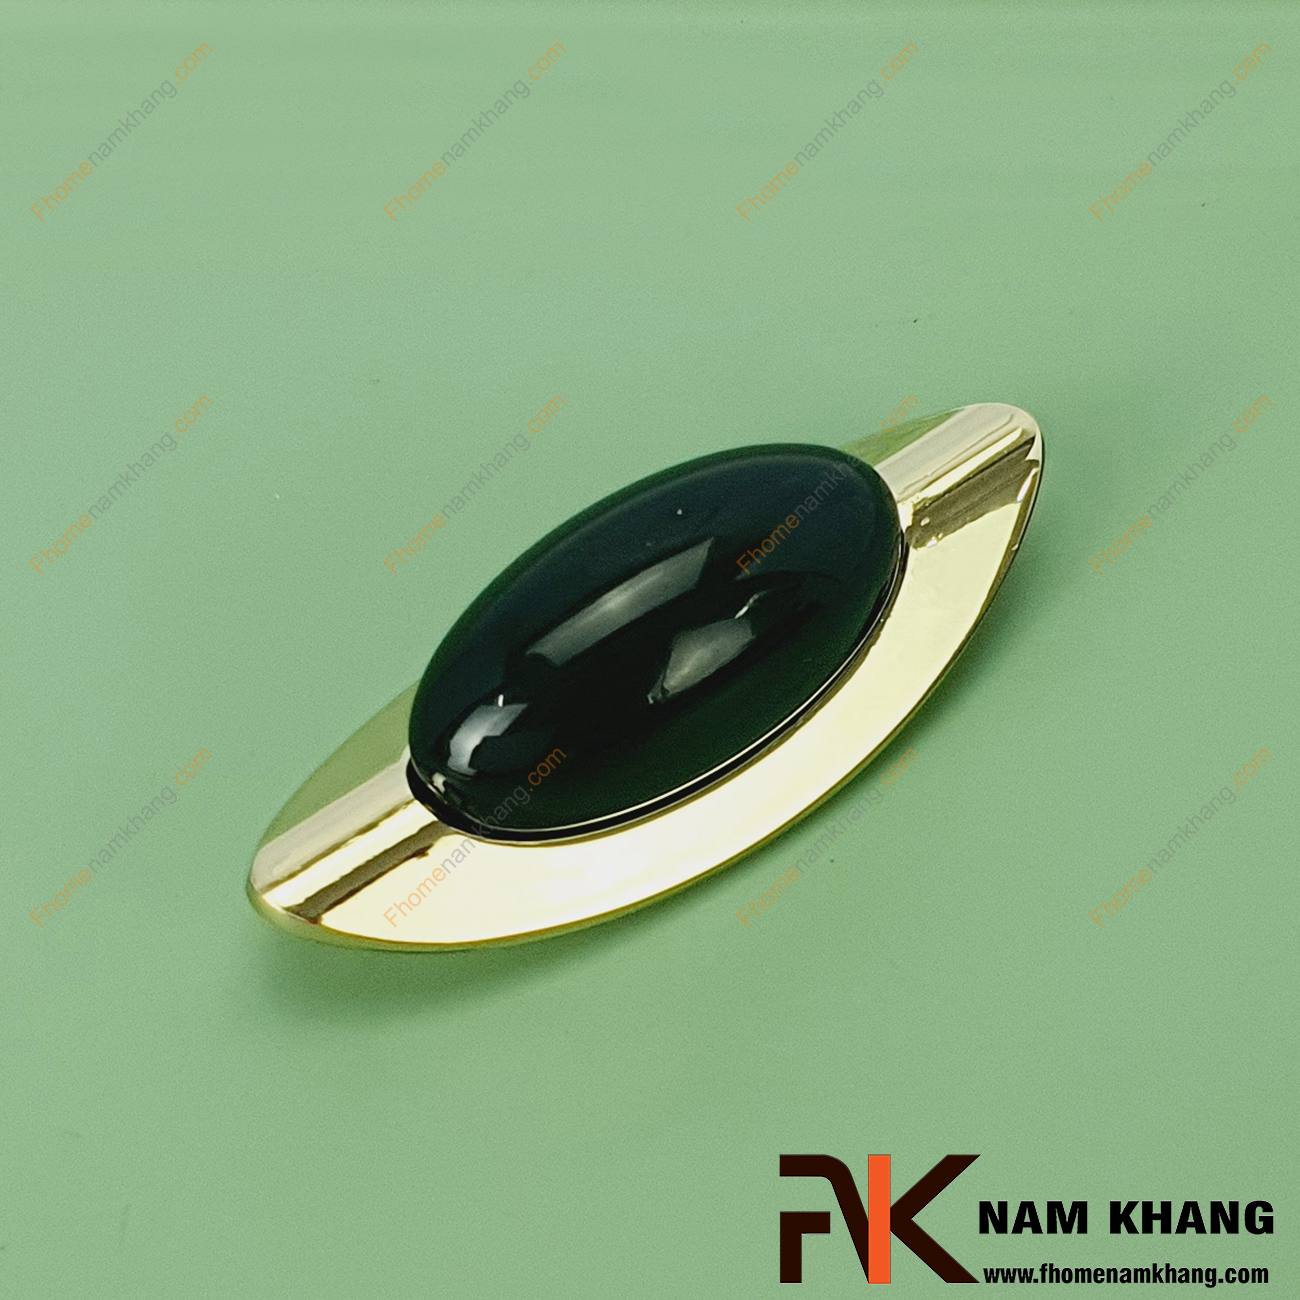 Tay nắm tủ vàng đen NK444-VD - một dạng tay nắm tủ dạng thanh ghép liền từ 2 phần khác nhau cho sự ấn tượng đặc biệt trên một sản phẩm nhỏ gọn.